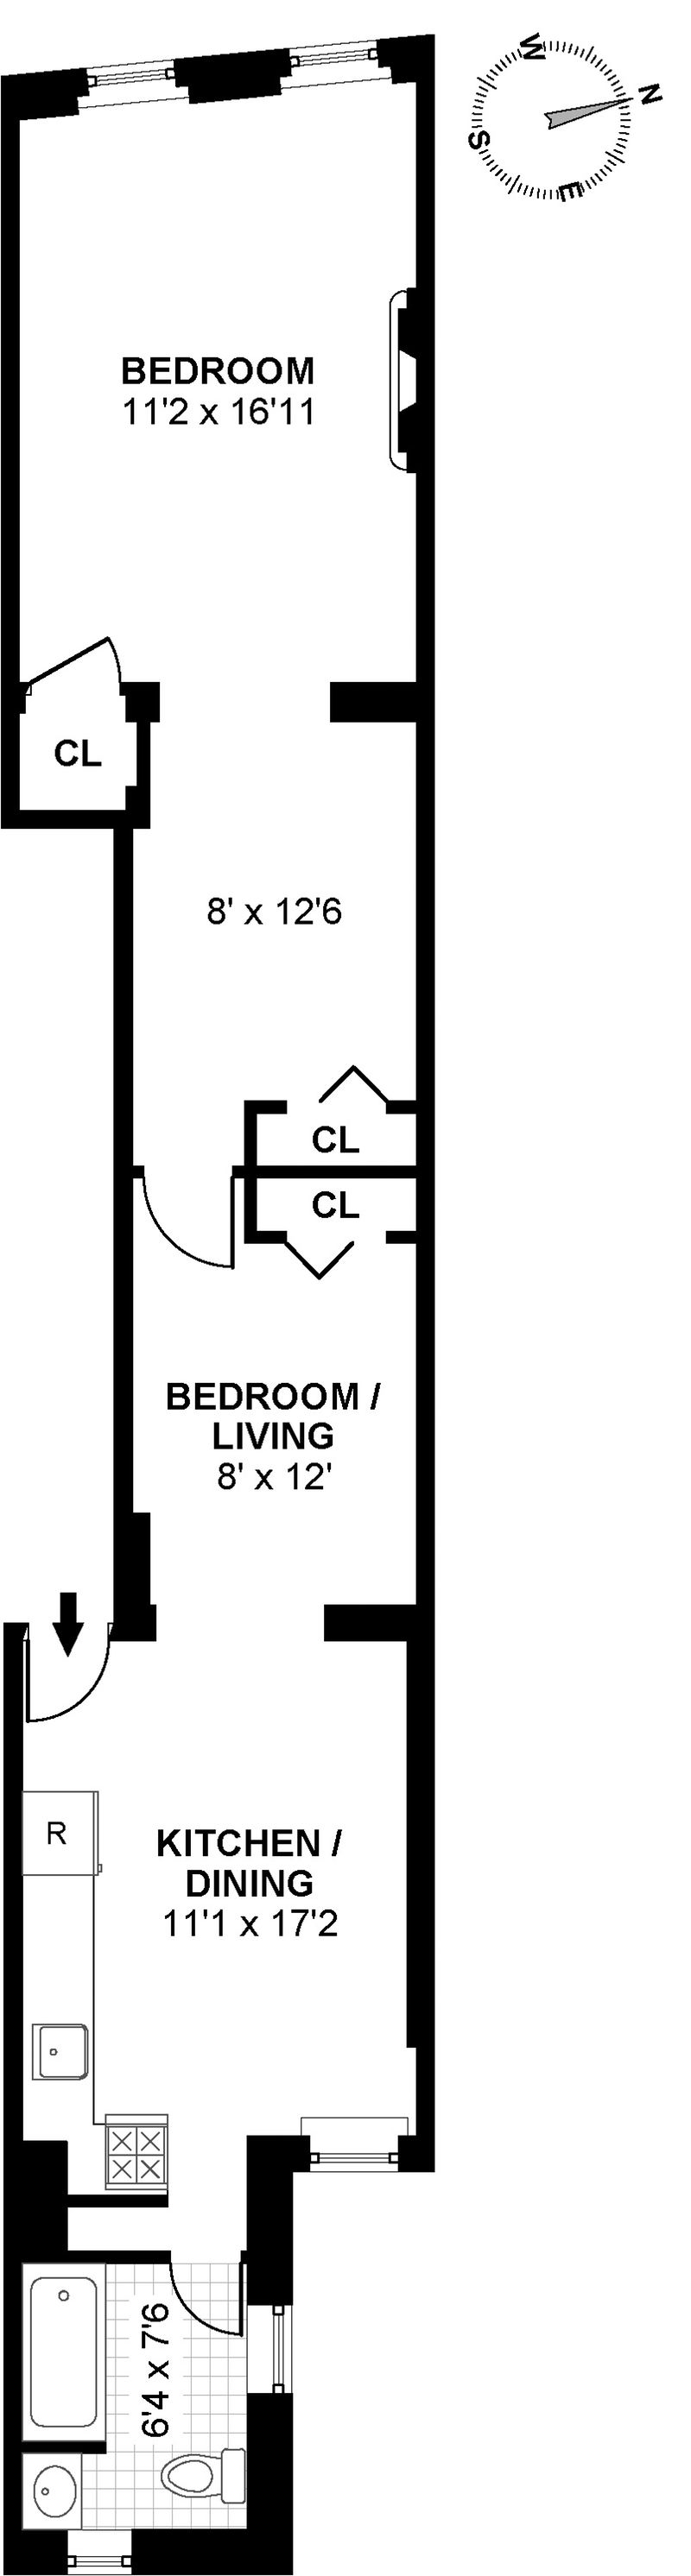 Floorplan for Spacious One Bedroom